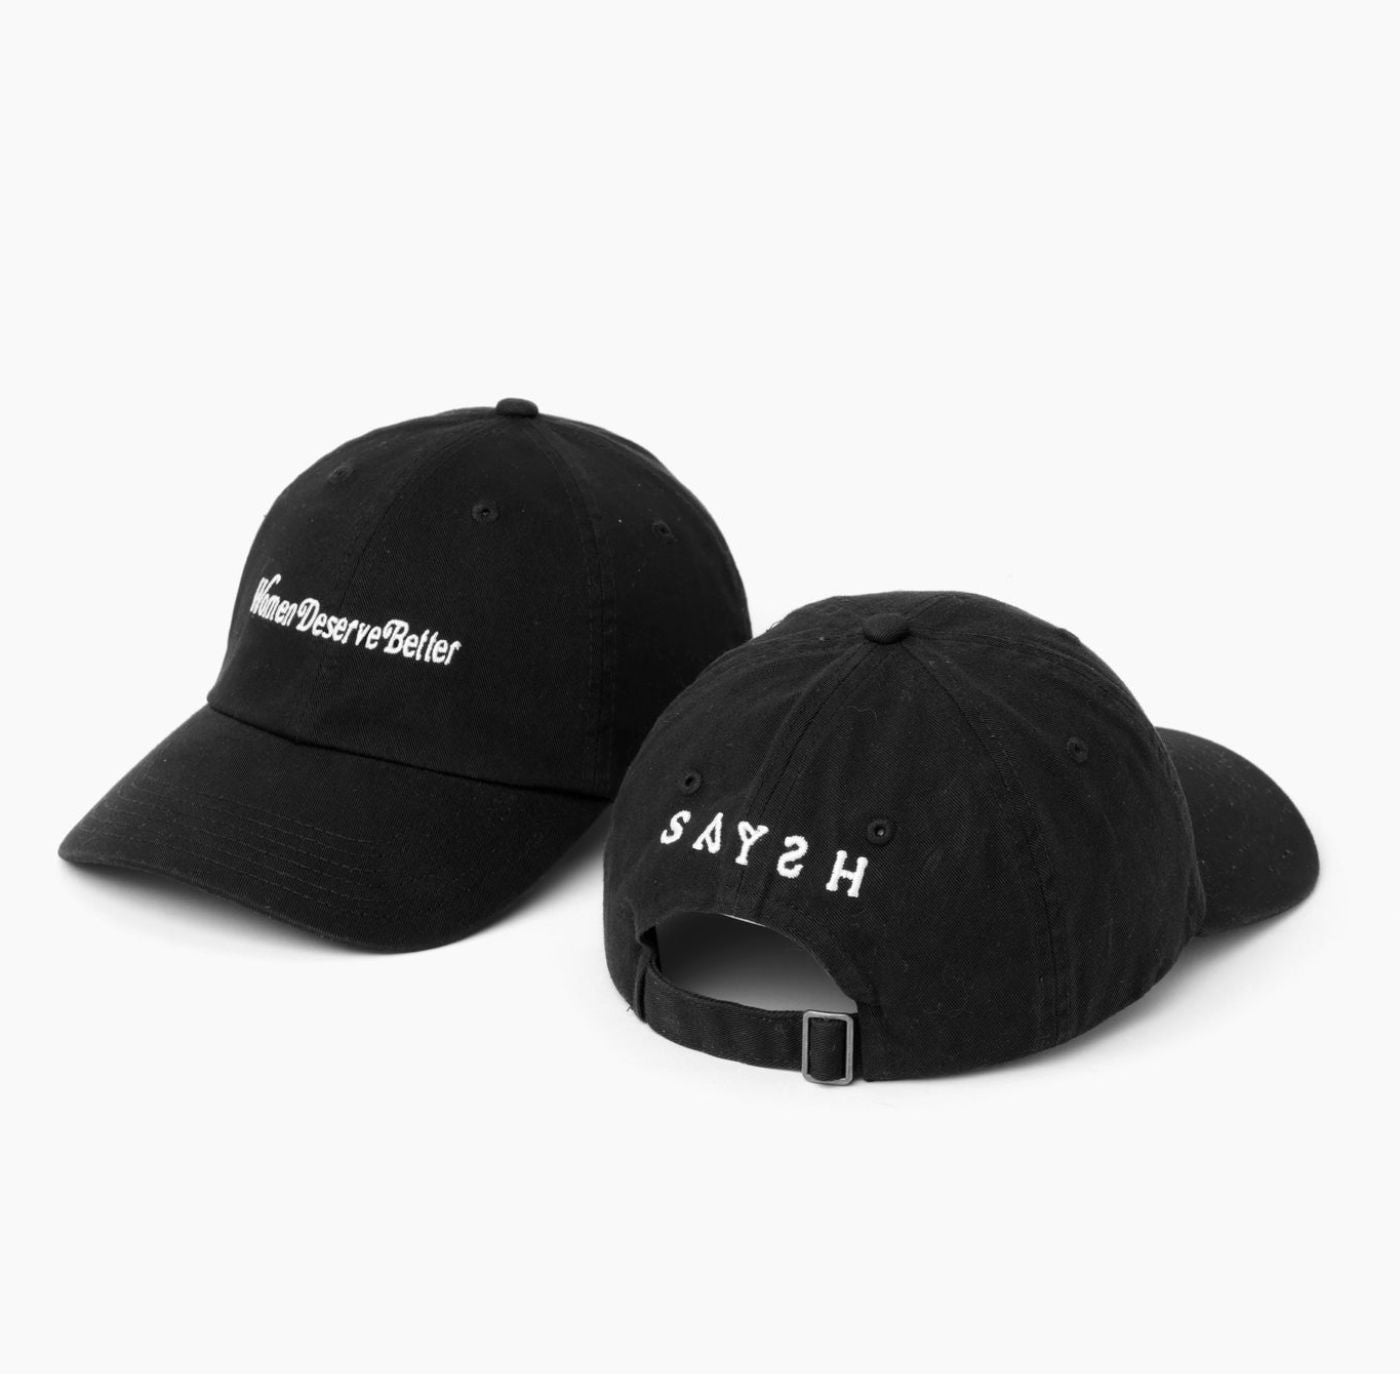 Saysh Hat